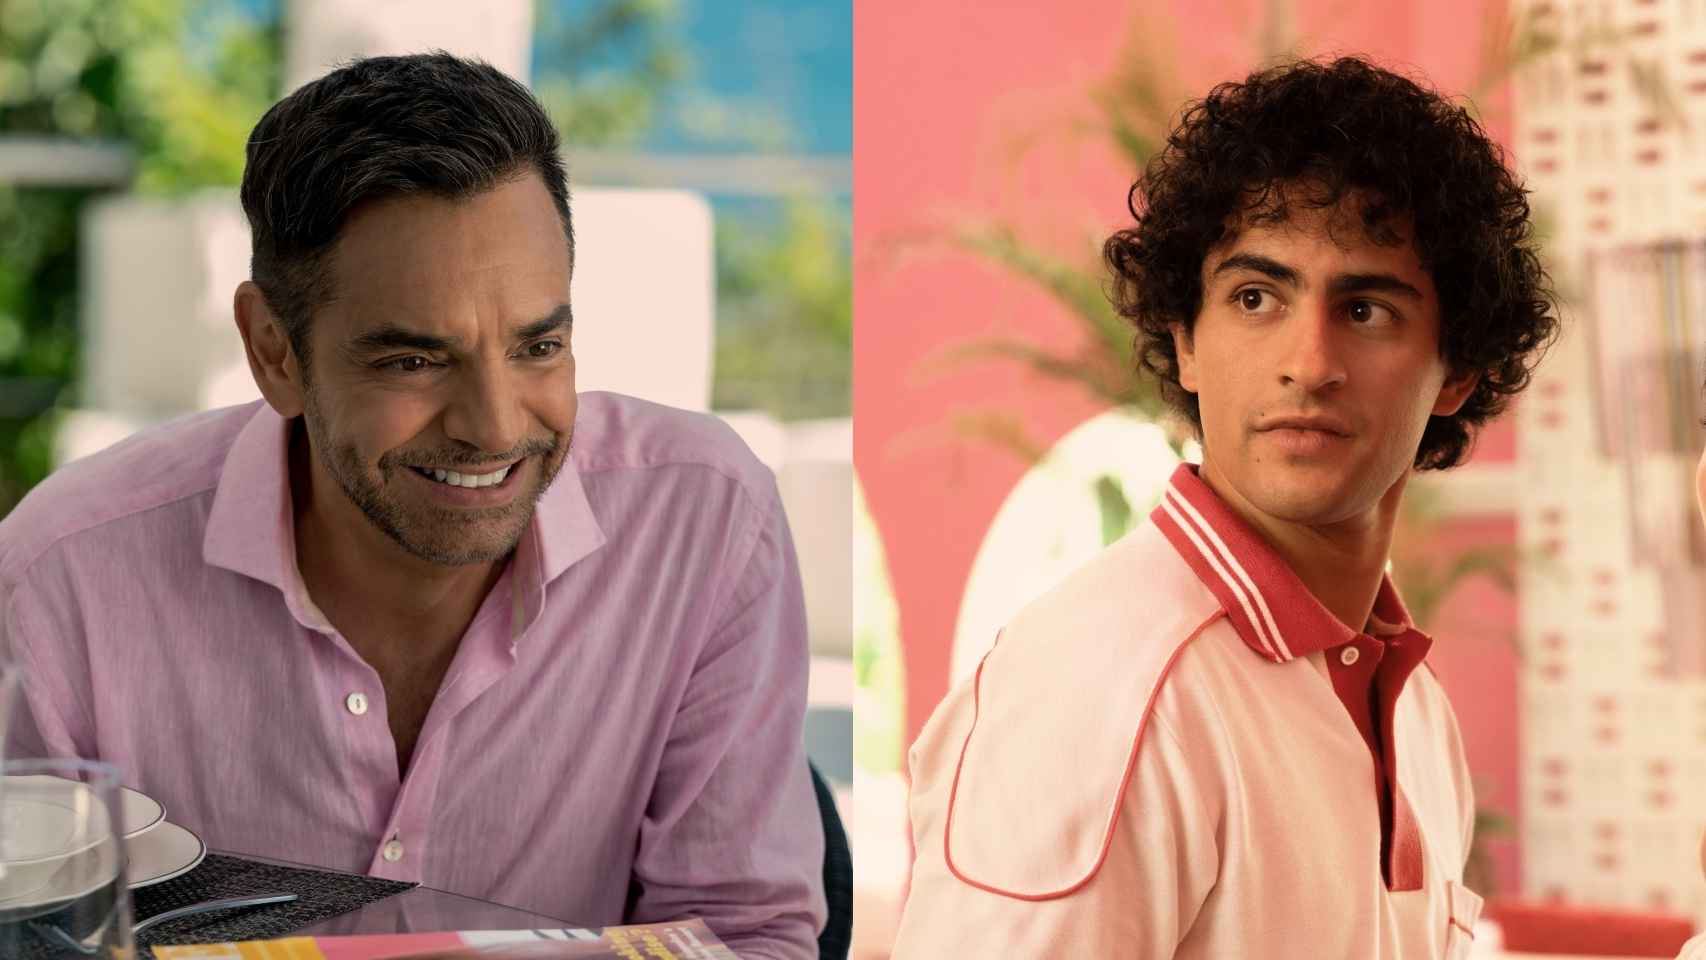 Máximo será interpretado por Eugenio Derbez (izquierda) y Enrique Arrizon (derecha).